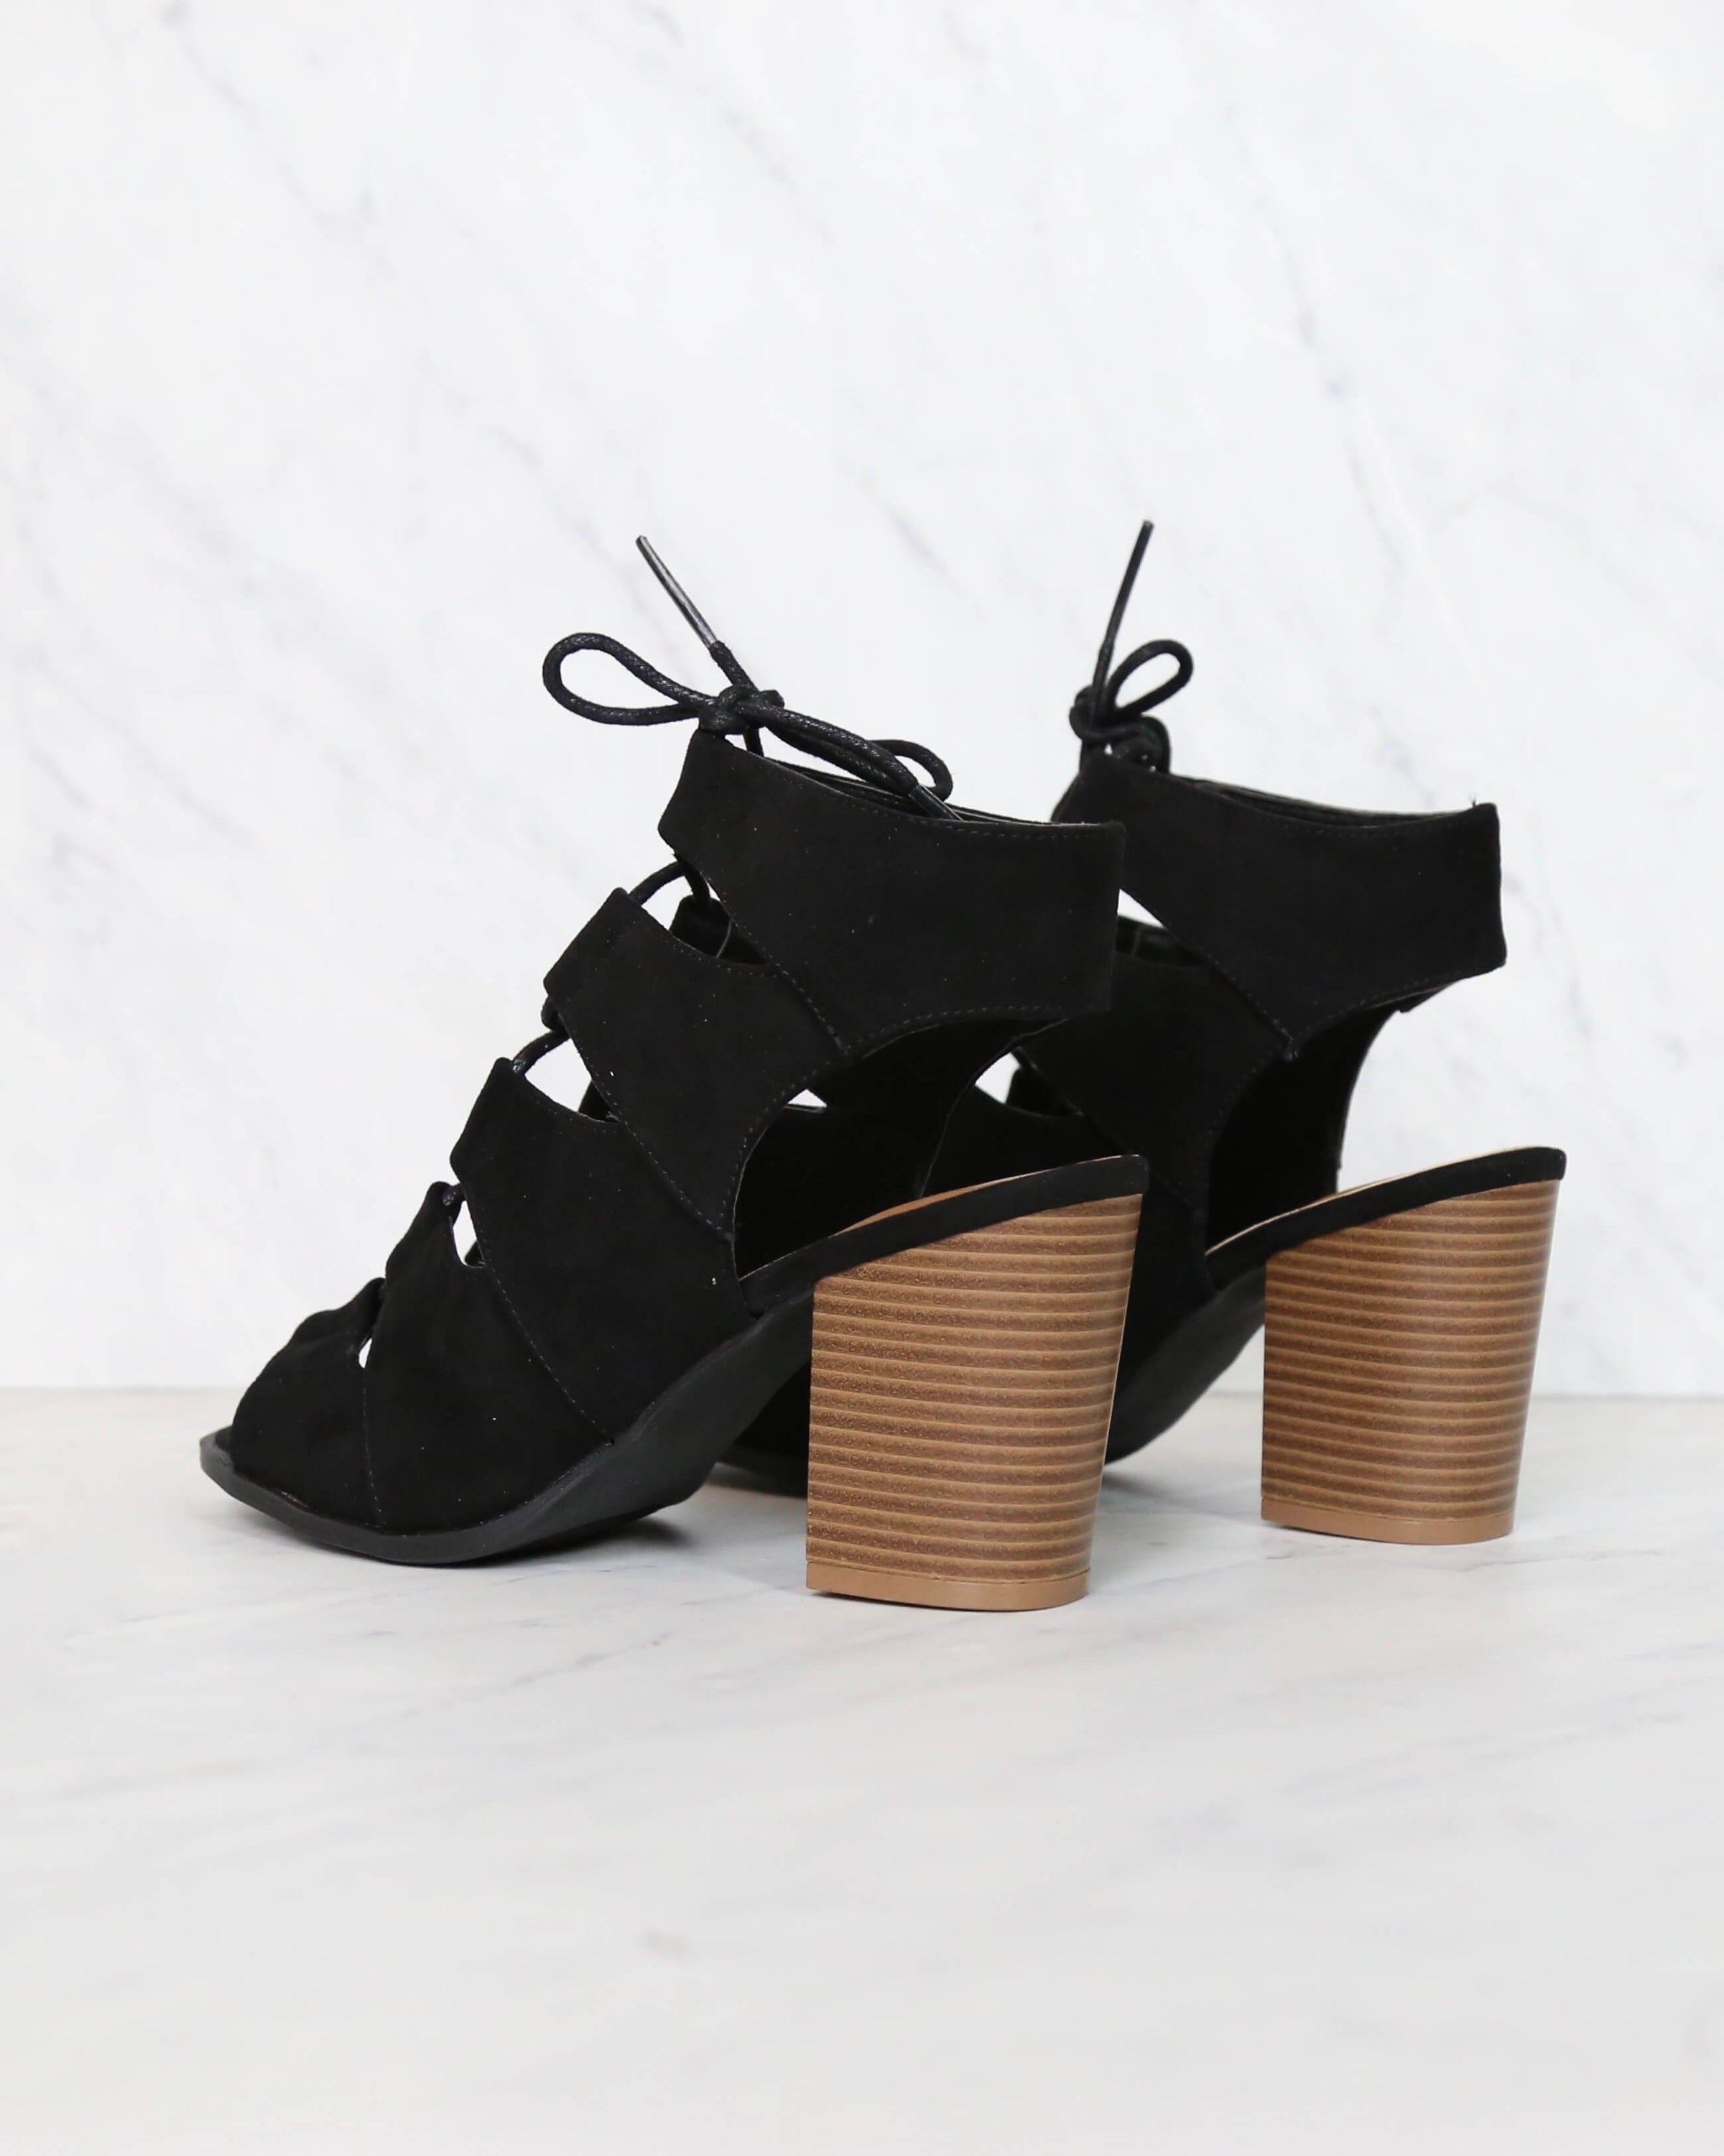 Peekaboo Cut Out Heels in Black – Shop 